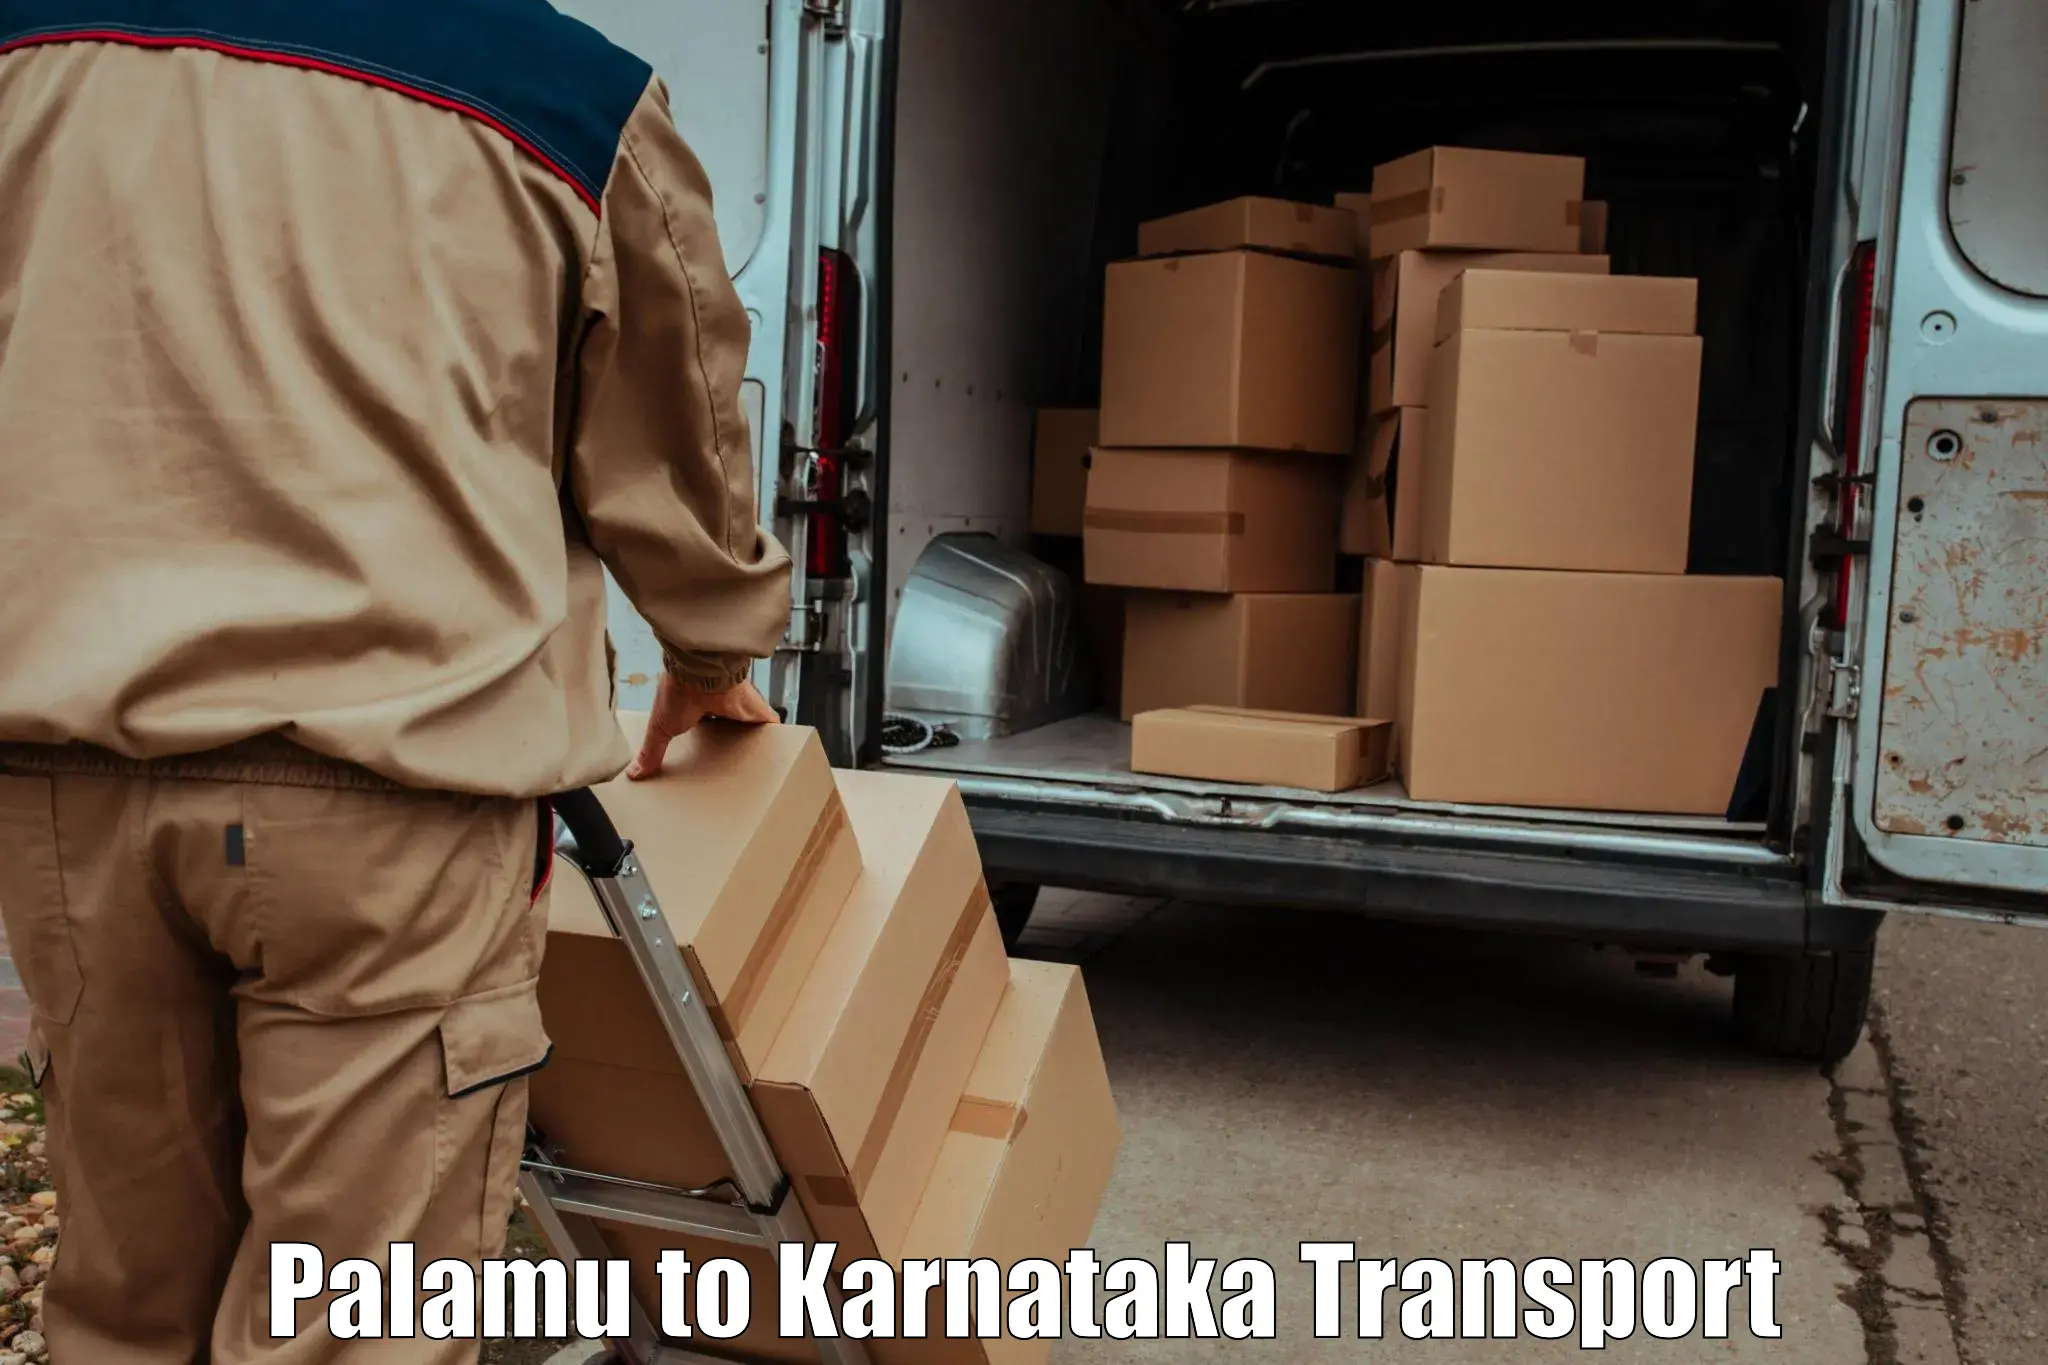 Transport services Palamu to Mangalore Port